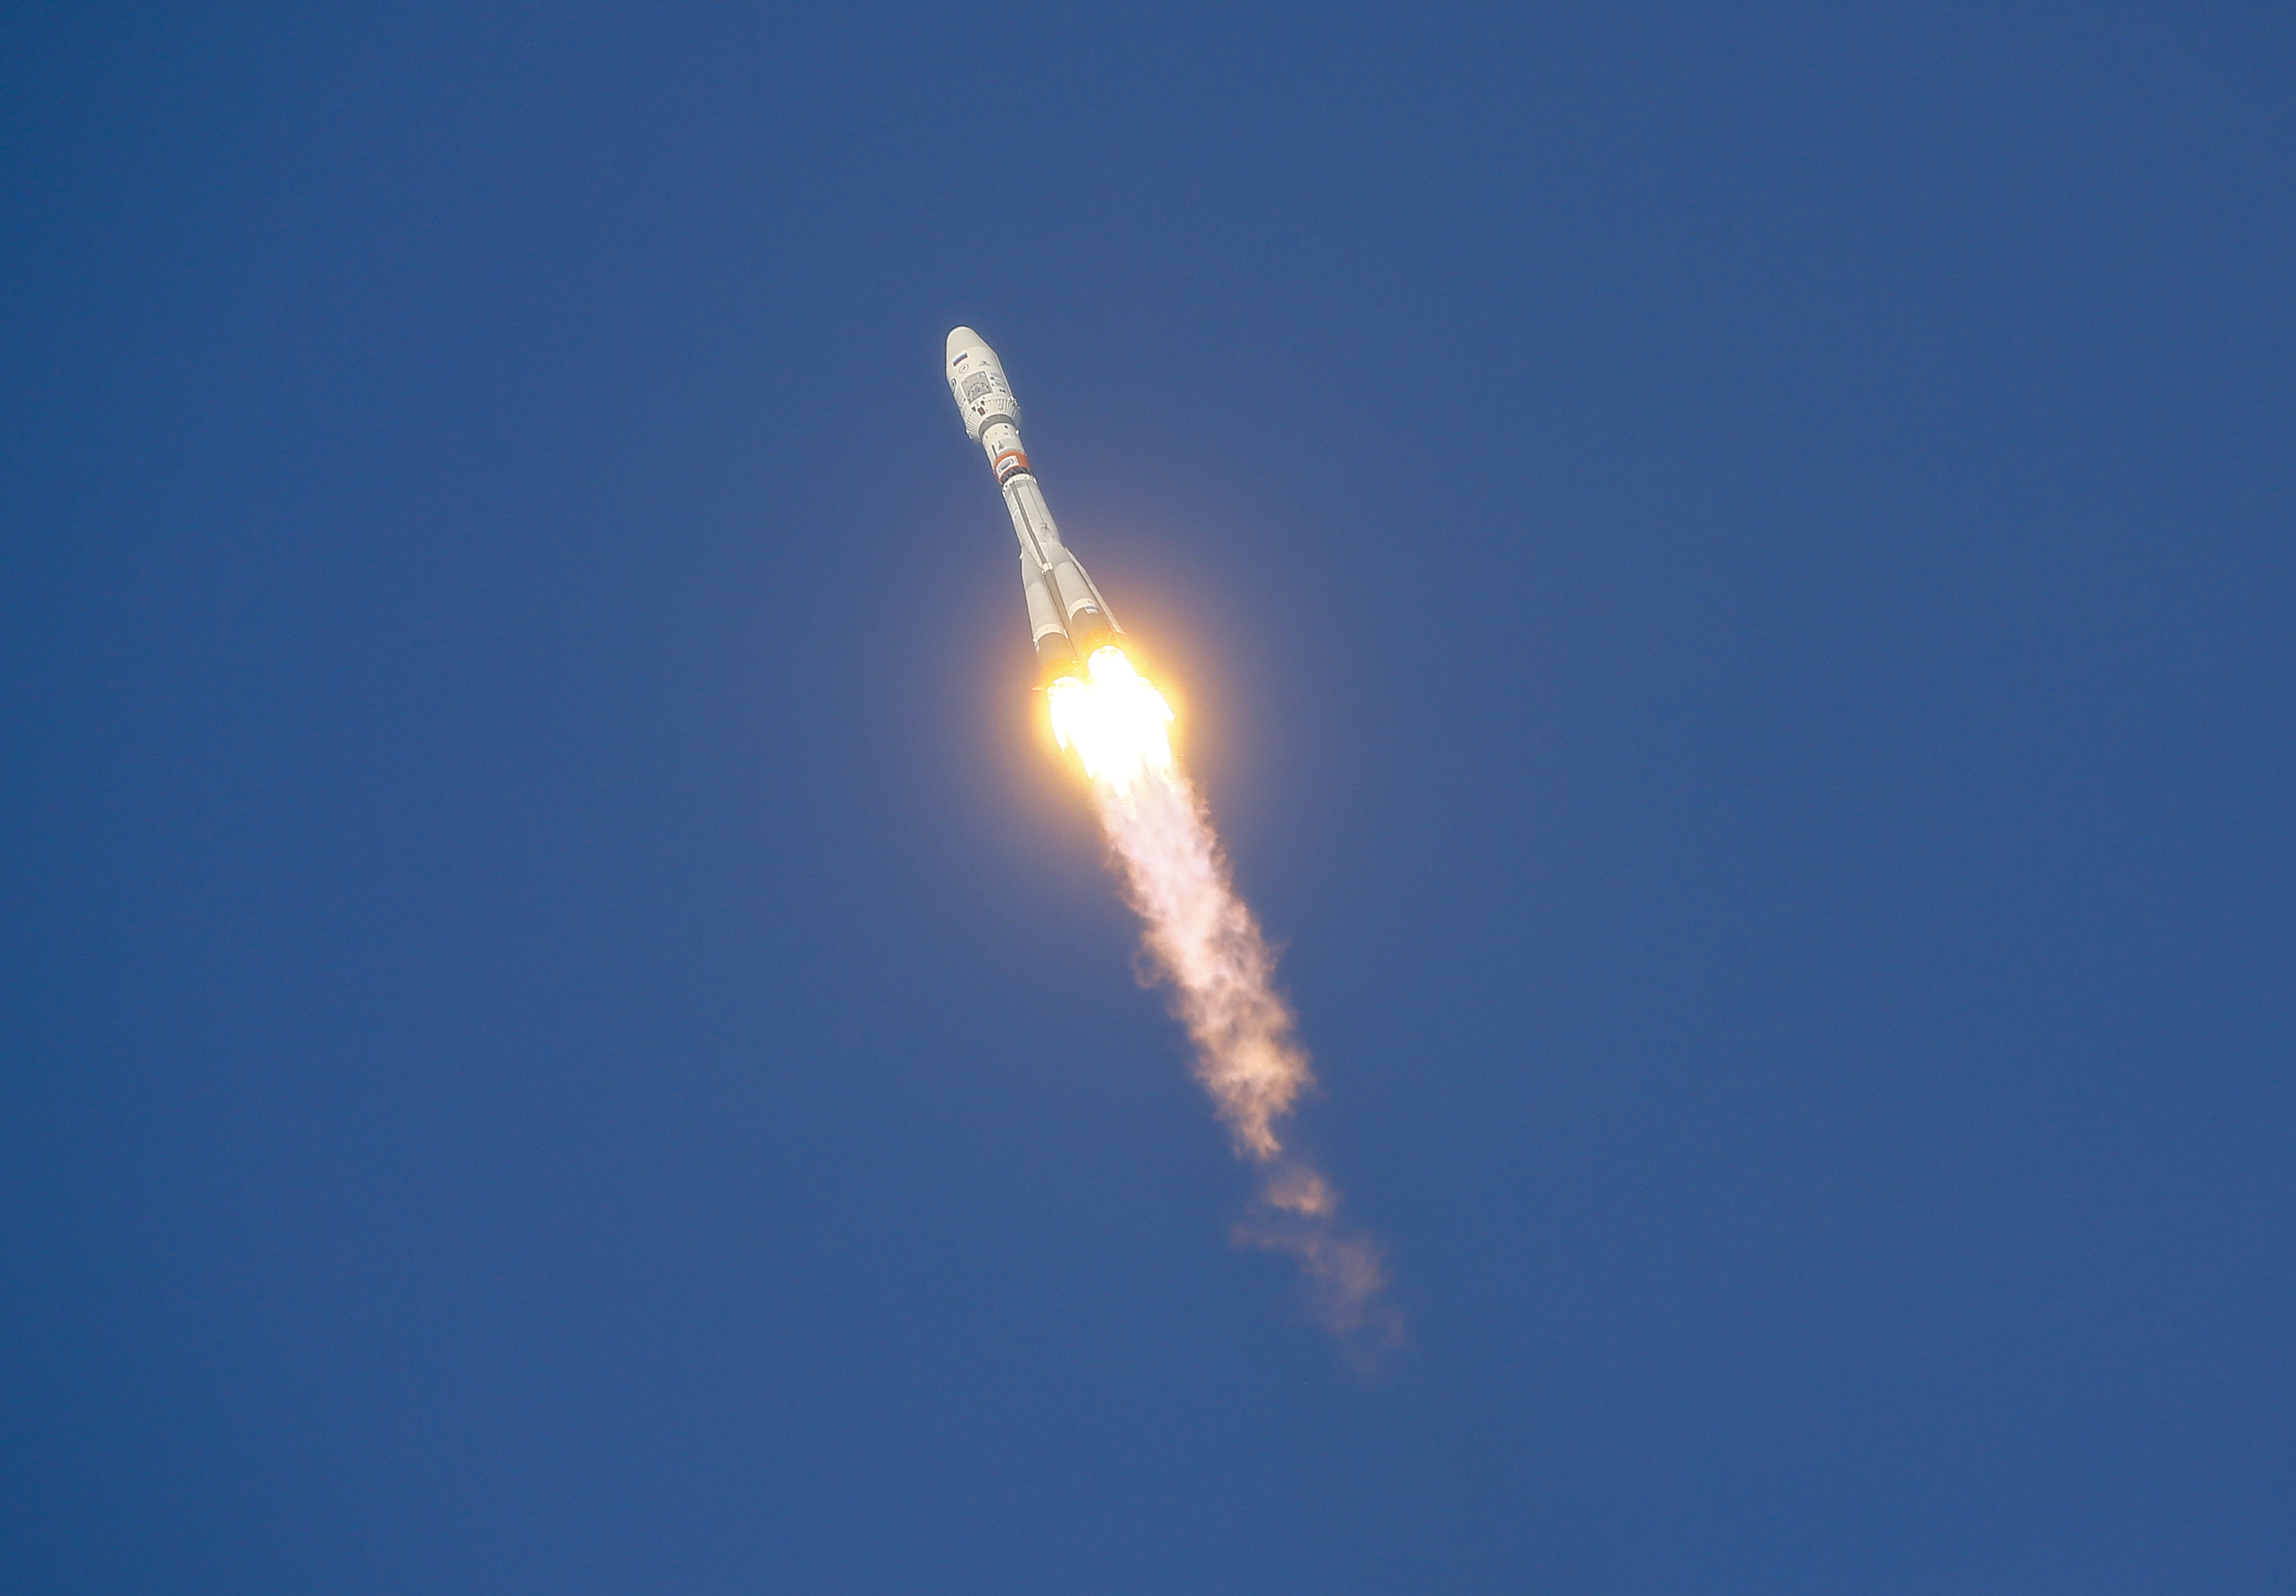 المركبة الفضائية الروسية تحلق فى السماء